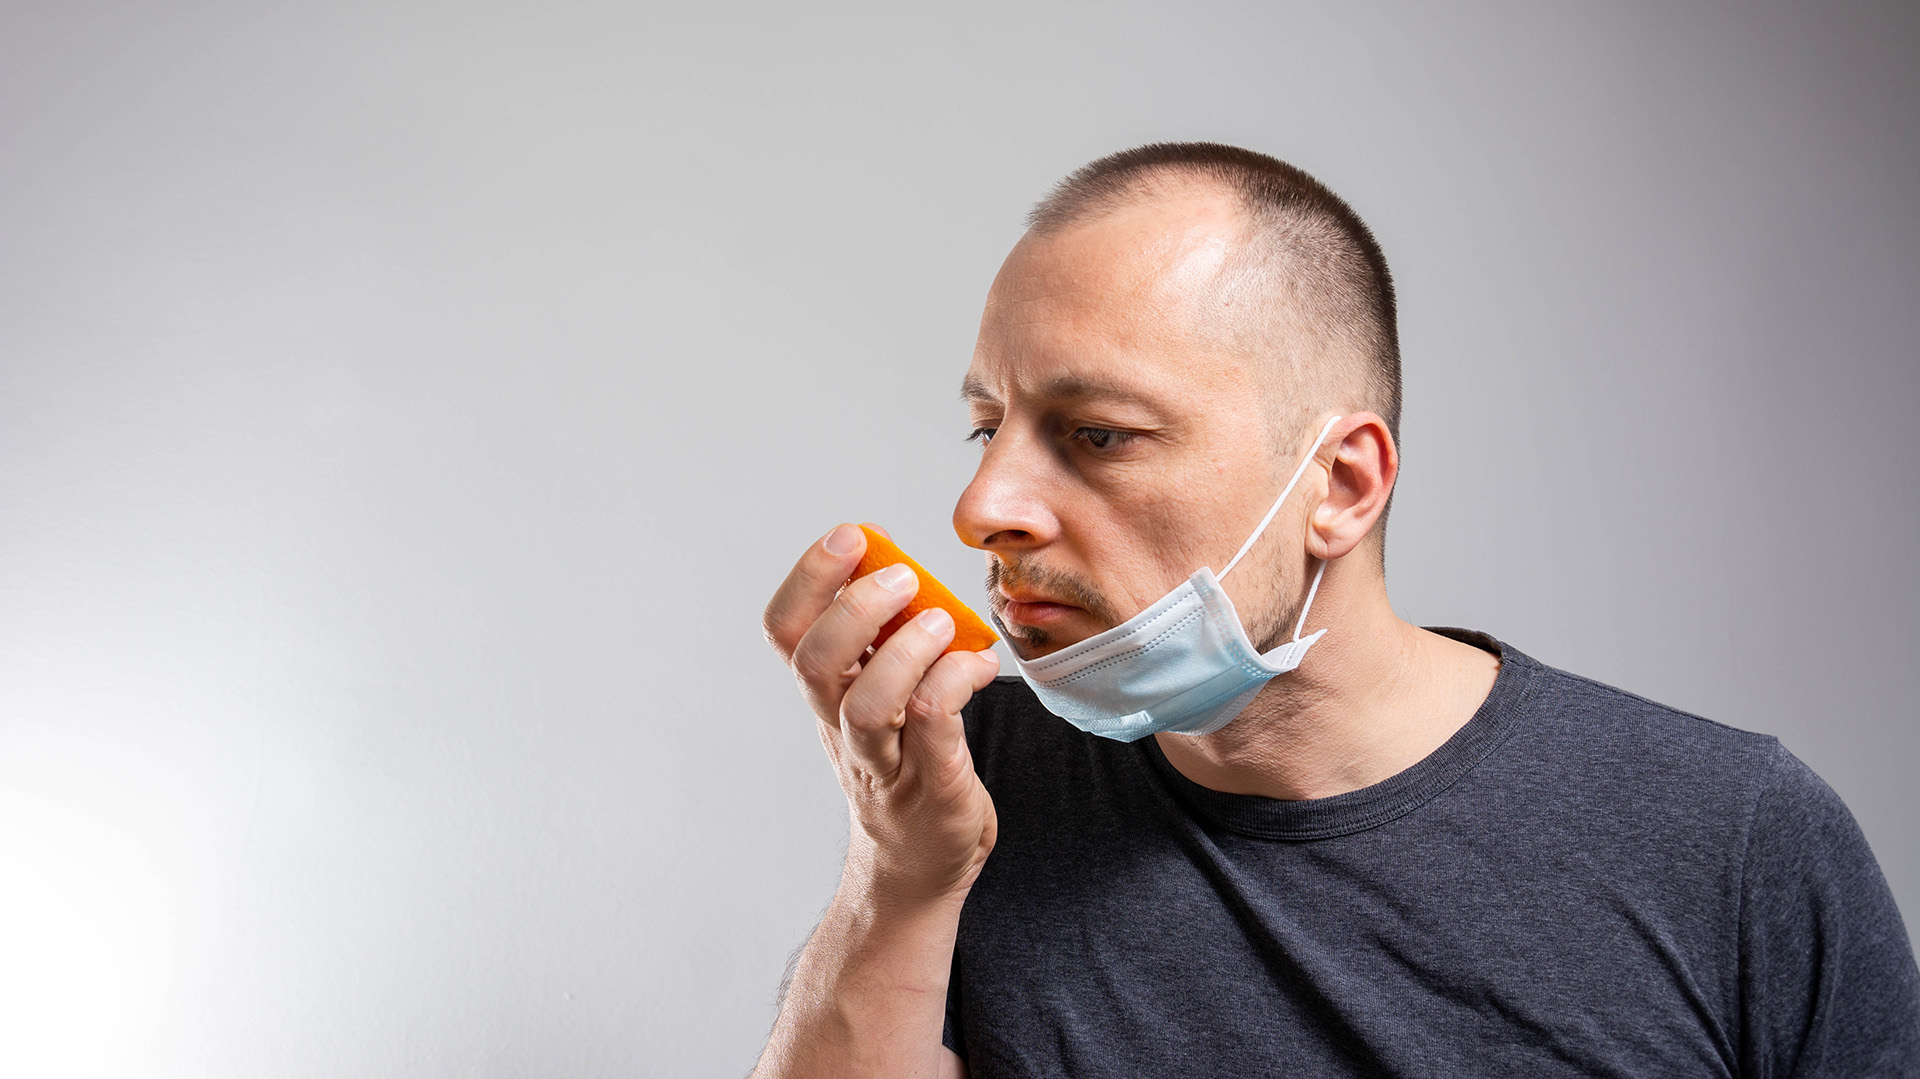 La pérdida del olfato es un síntoma del Covid-19. Pero también otras infecciones en la nariz, garganta o senos paranasales pueden provocar el mismo síntoma. Ahora, le están prestando más atención y fondos para investigarlos (Shutterstock.com)